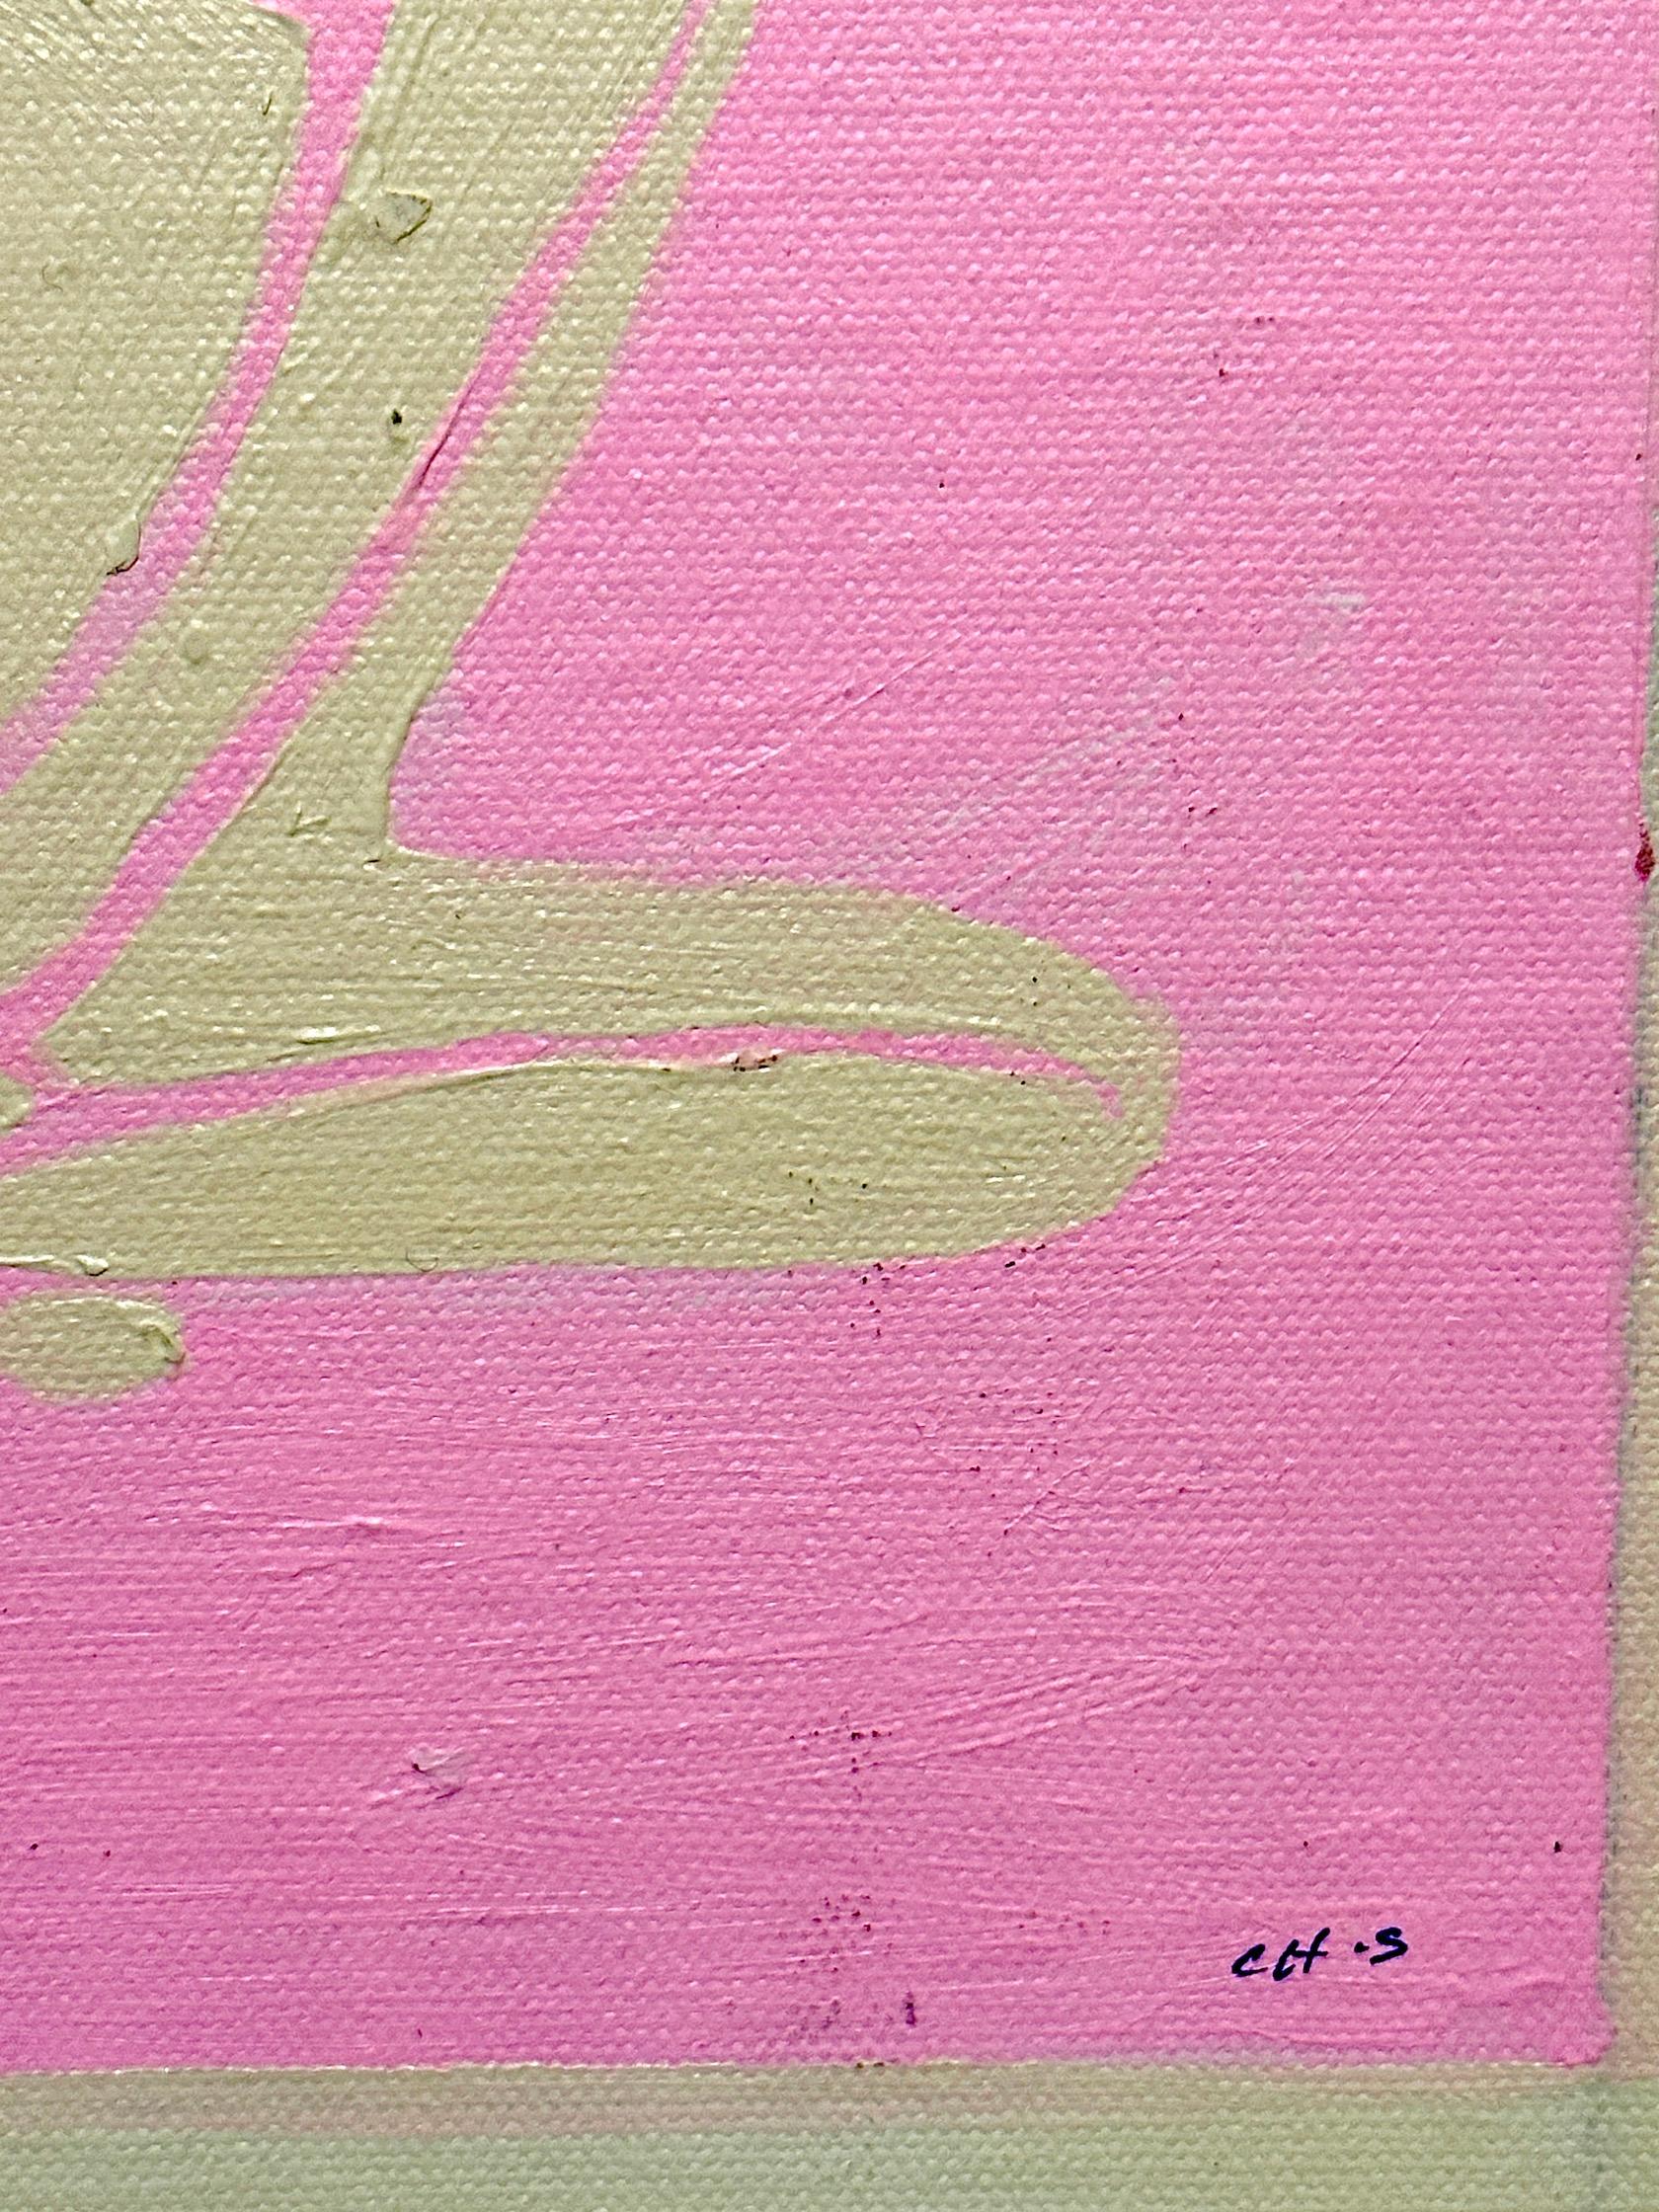 
Acquérir auprès de moi une peinture abstraite contemporaine anglaise de figure inspirée par Henri Matisse en rose et blanc est une invitation à apporter une expression vibrante et moderne de l'évolution artistique dans votre espace. Cette pièce